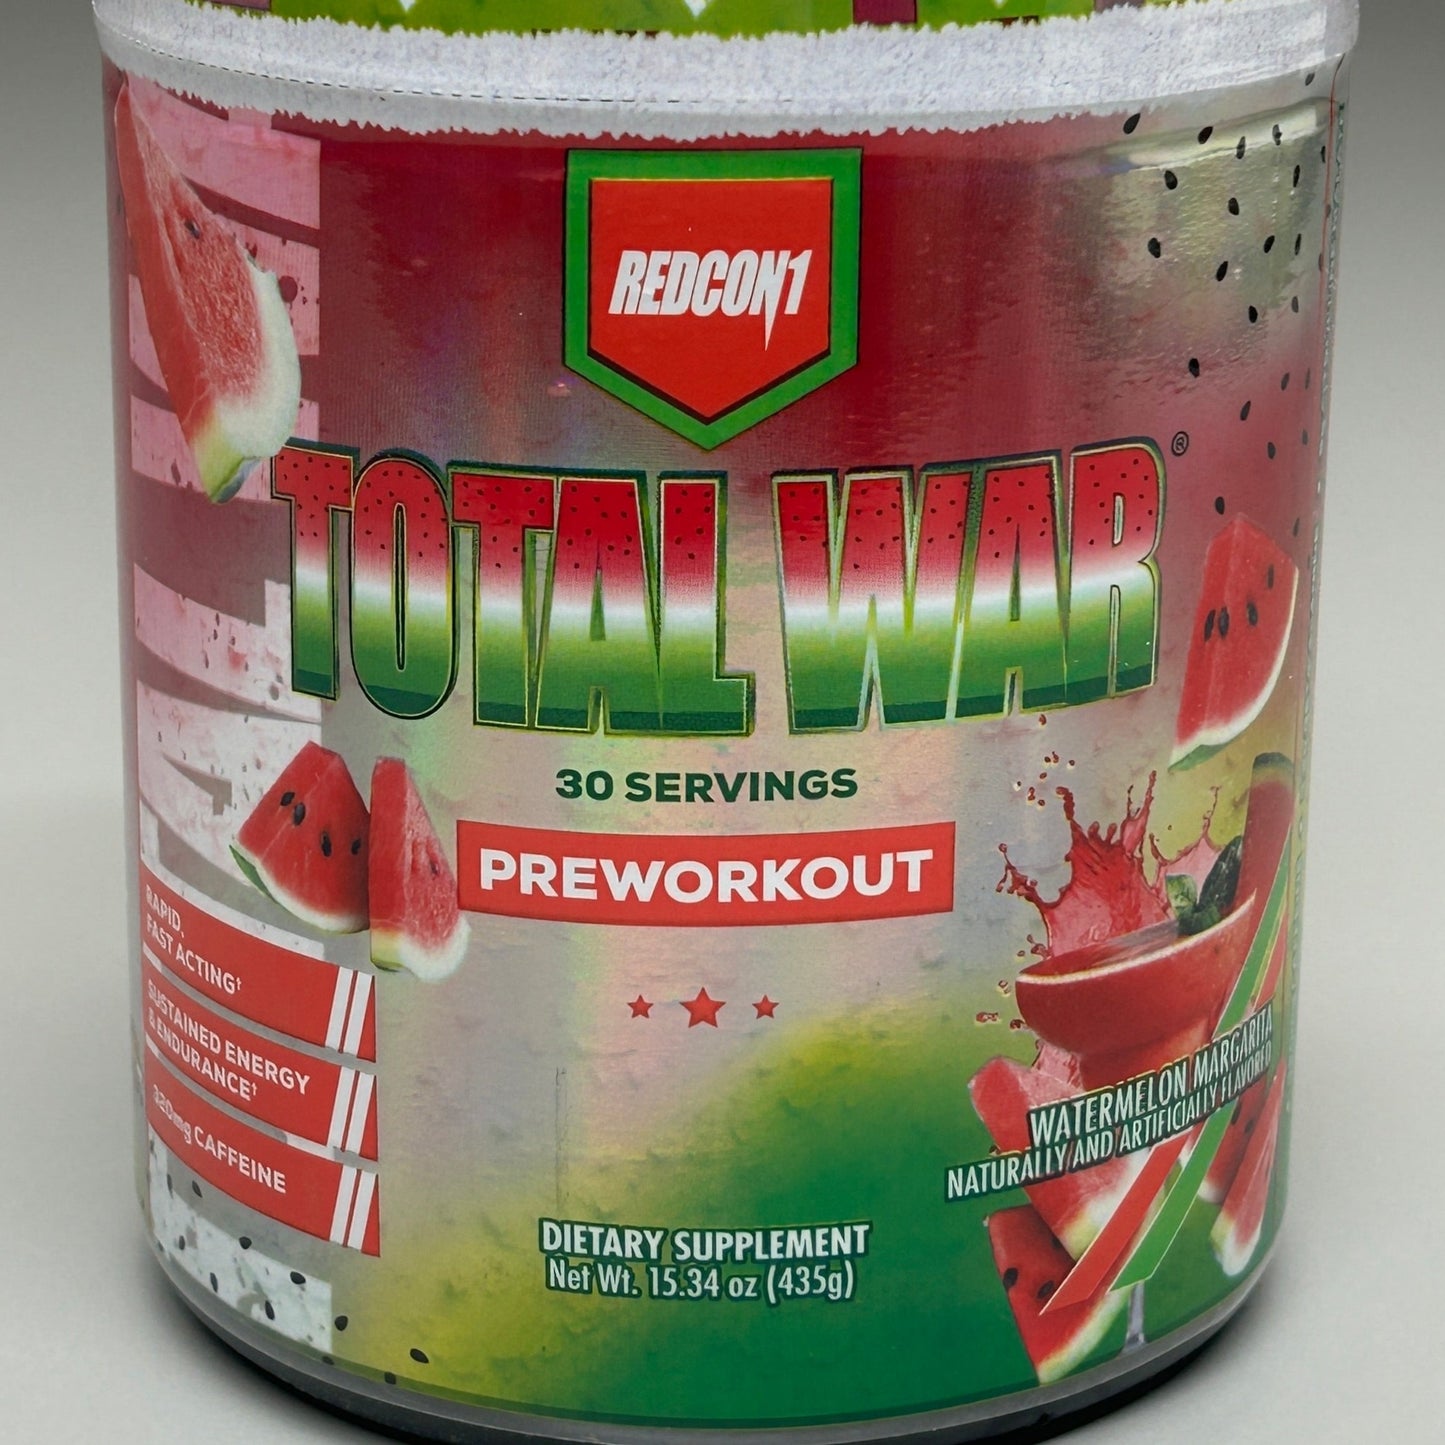 REDCON1 Total War Preworkout Watermelon Margarita 15.34 oz 30 Servings (New)